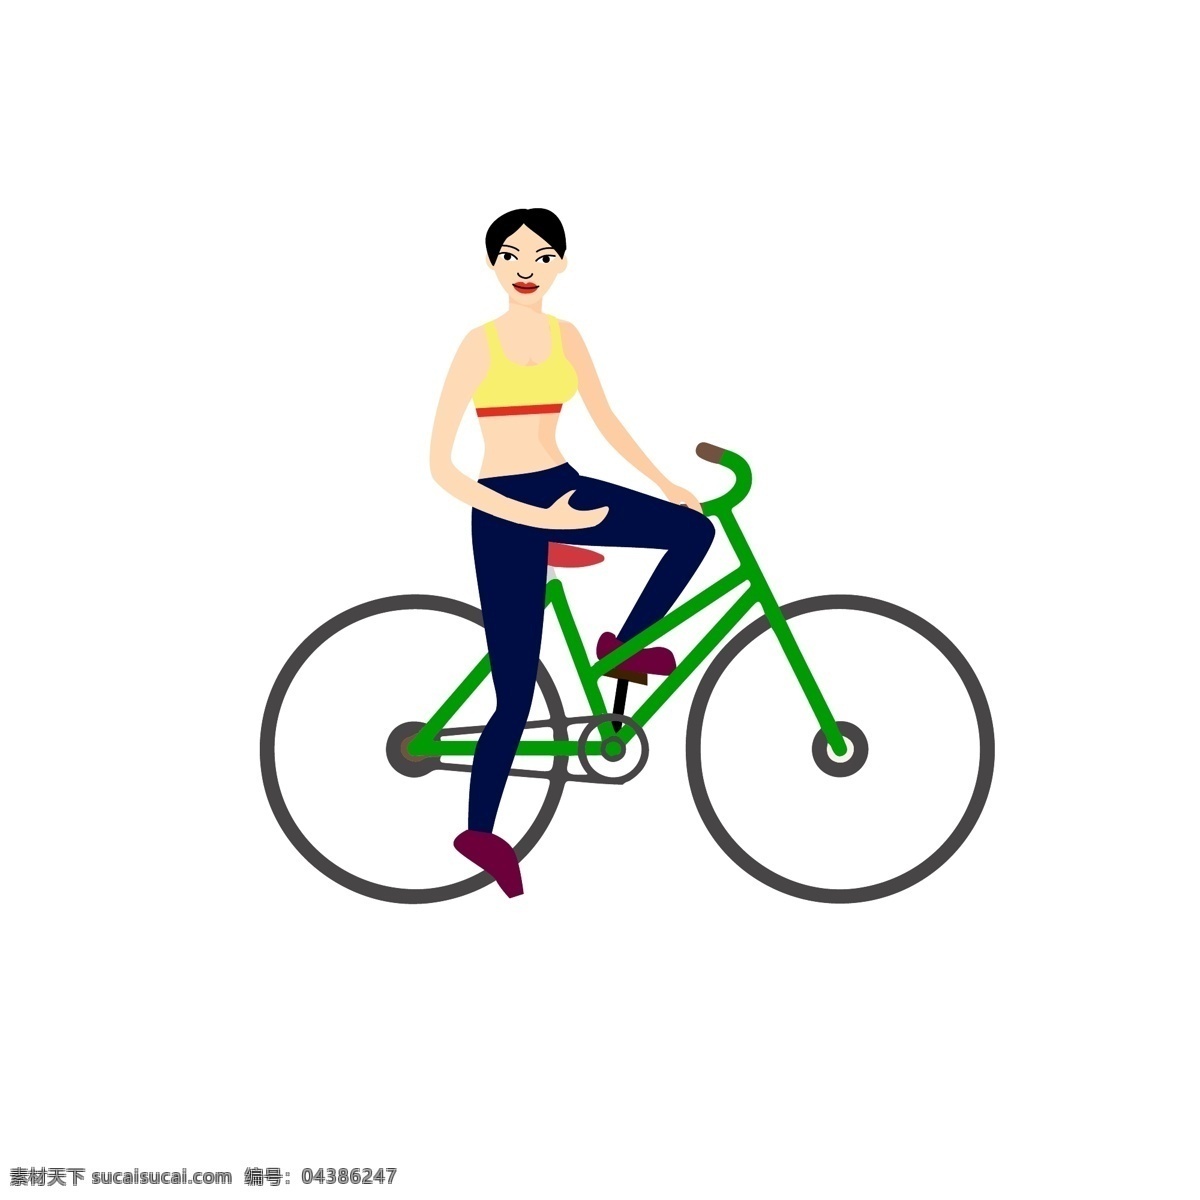 手绘 卡通 插画 体育运动 项目 人物 骑 自行车 手绘卡通 简约插画 骑自行车